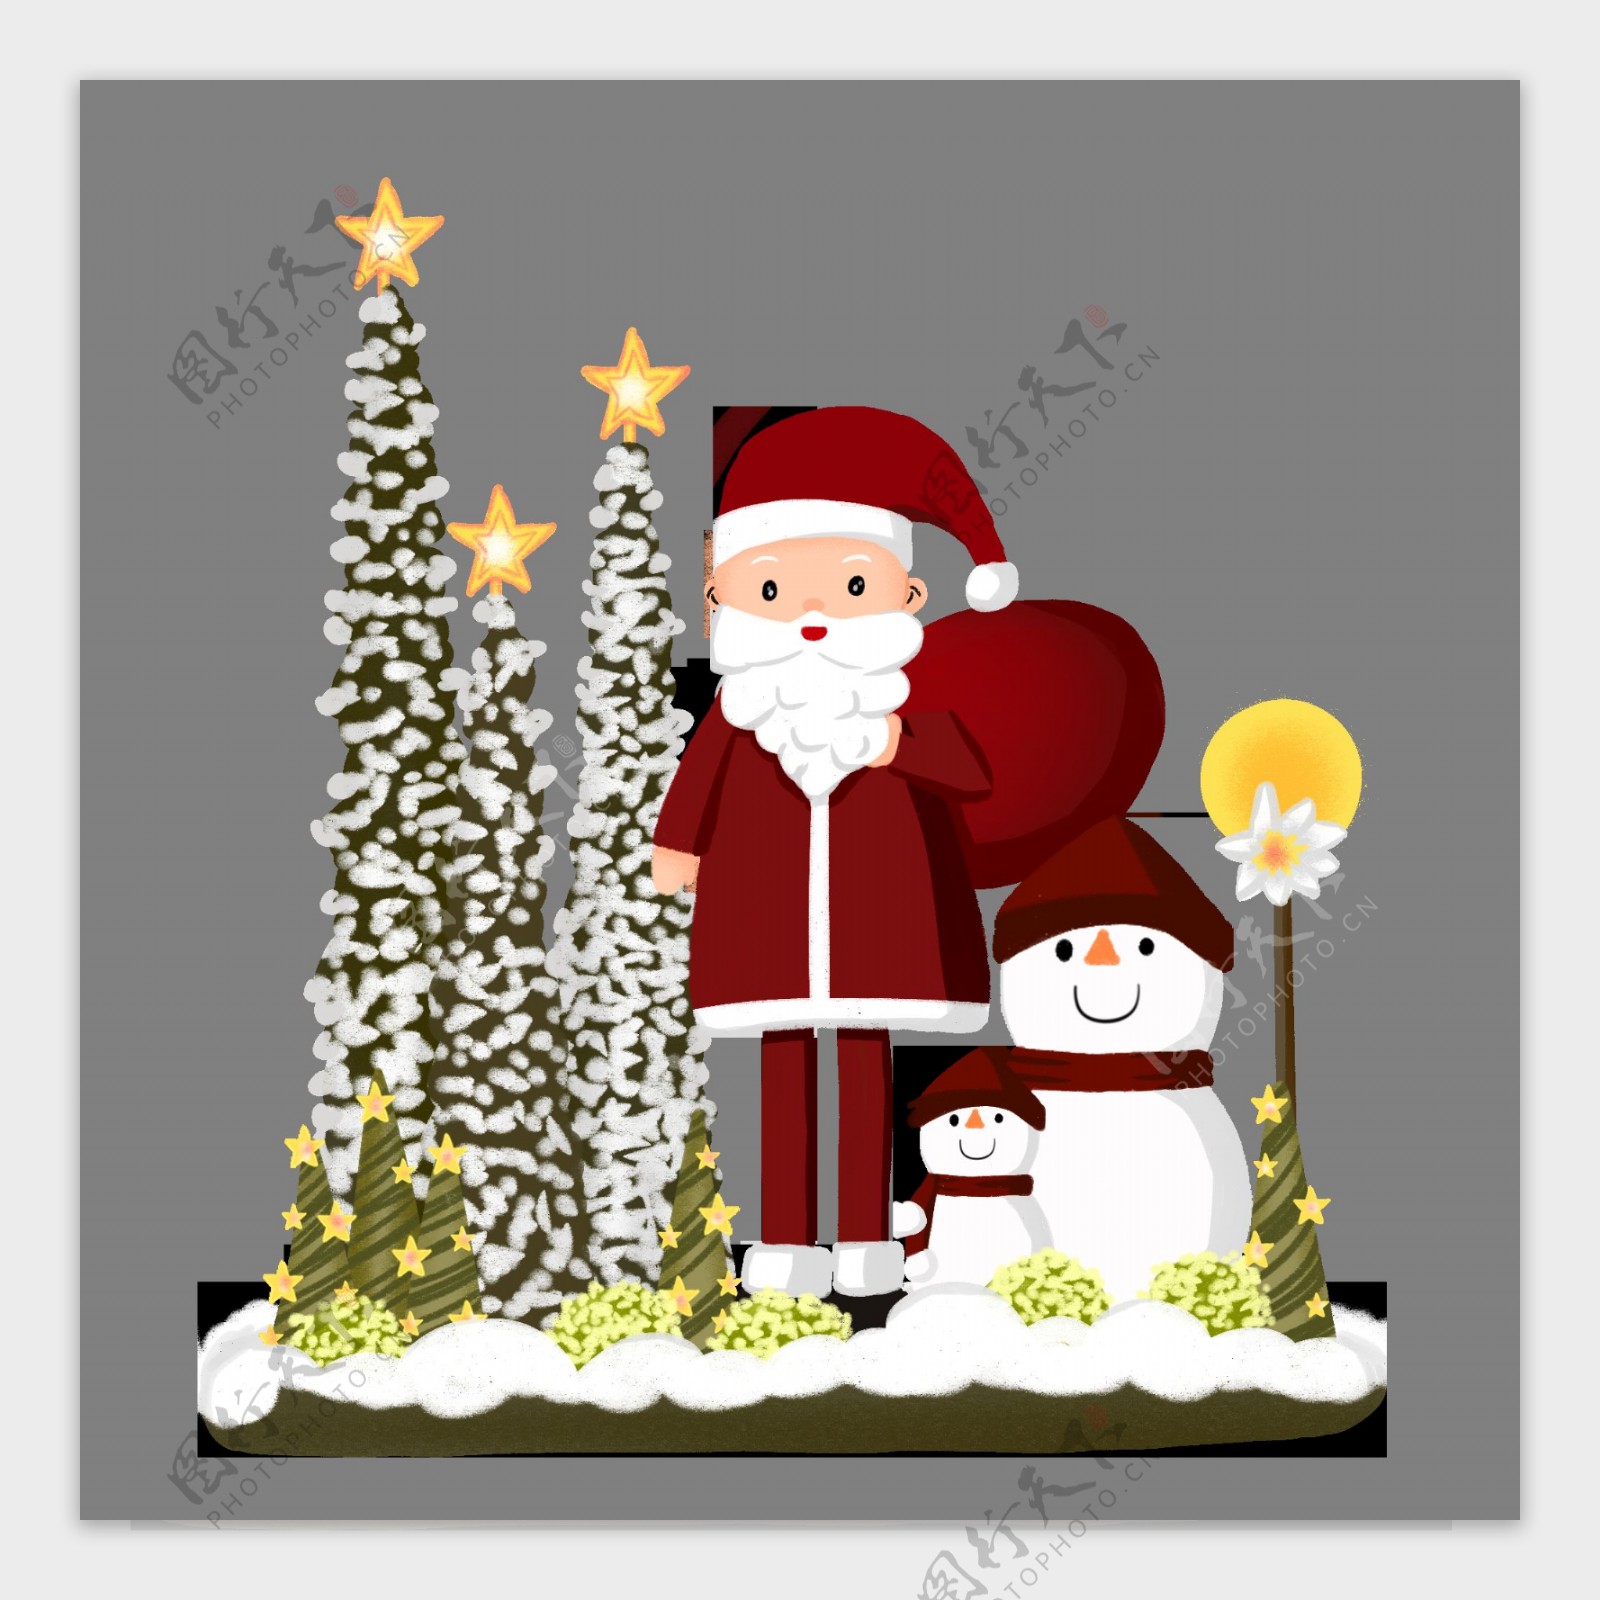 手绘圣诞节圣诞老人雪人松树星星场景素材